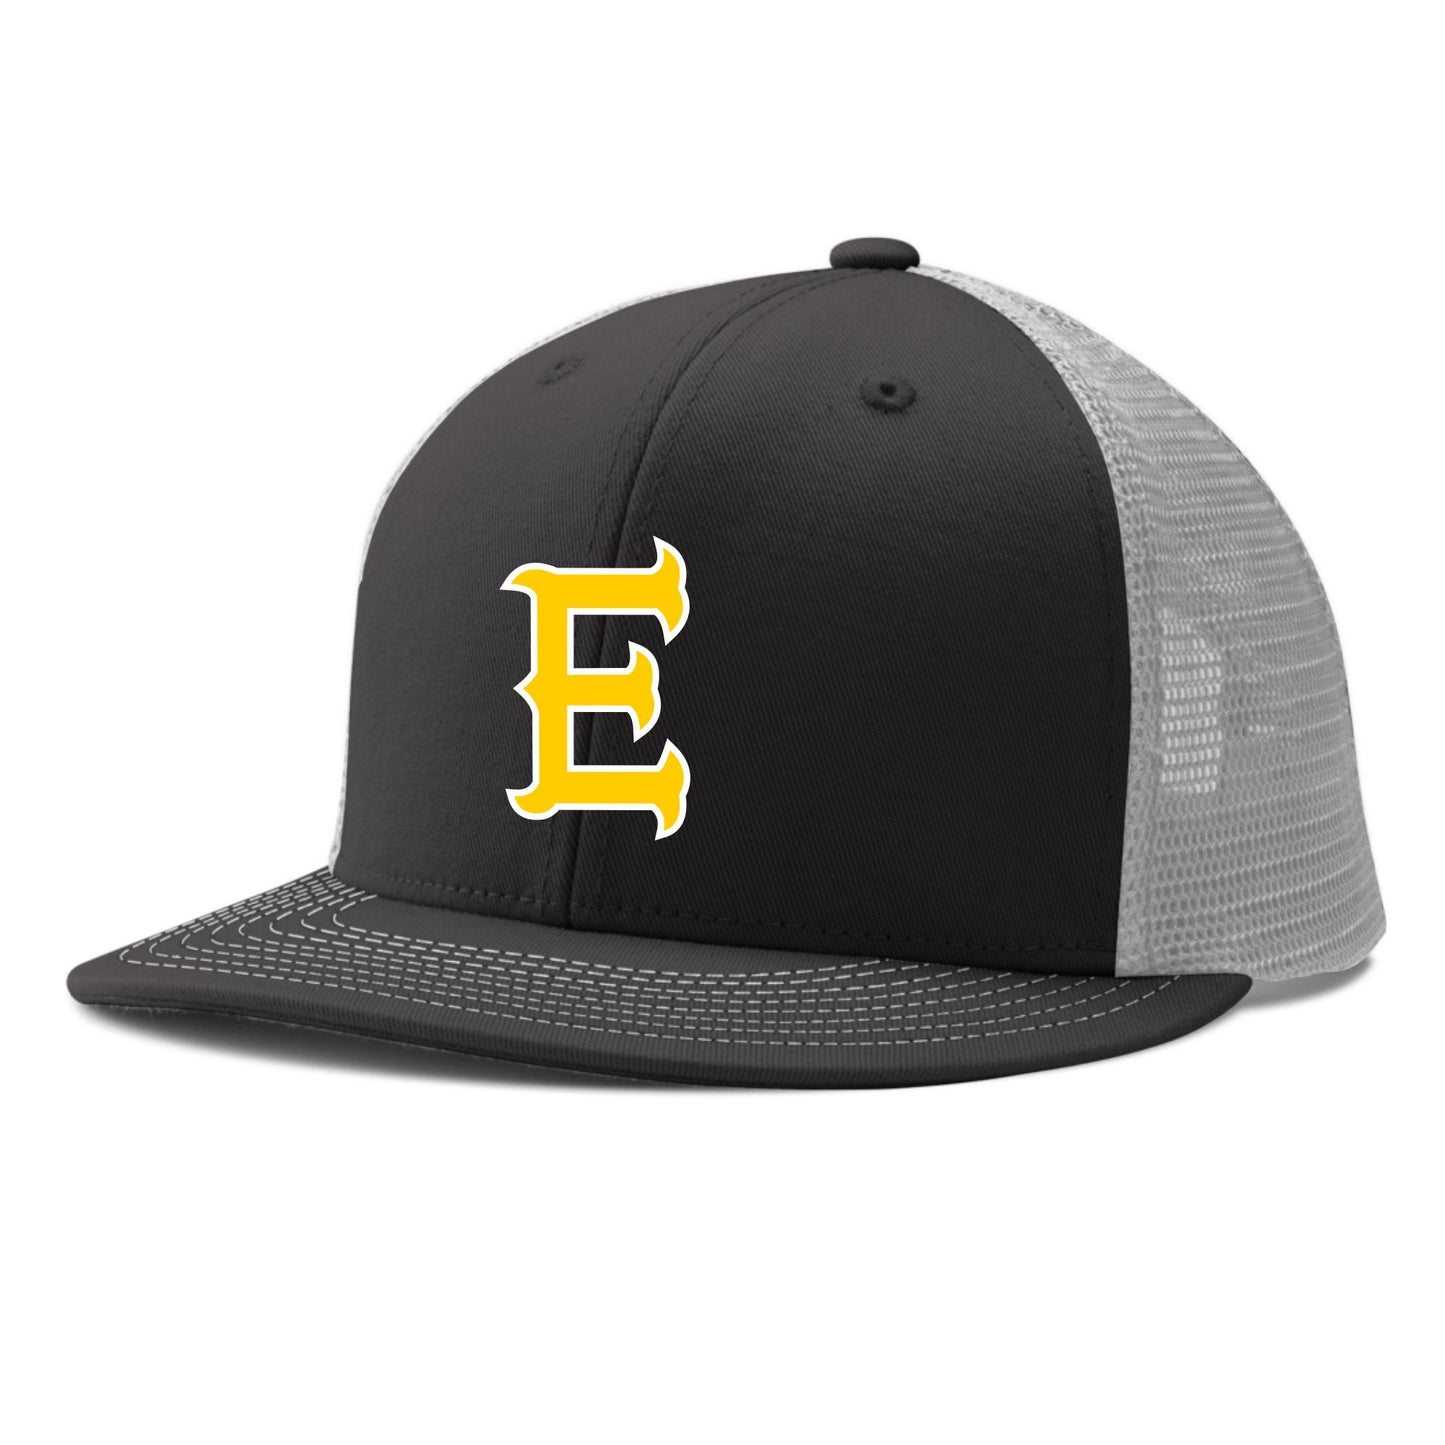 Edison Baseball Trucker Hat